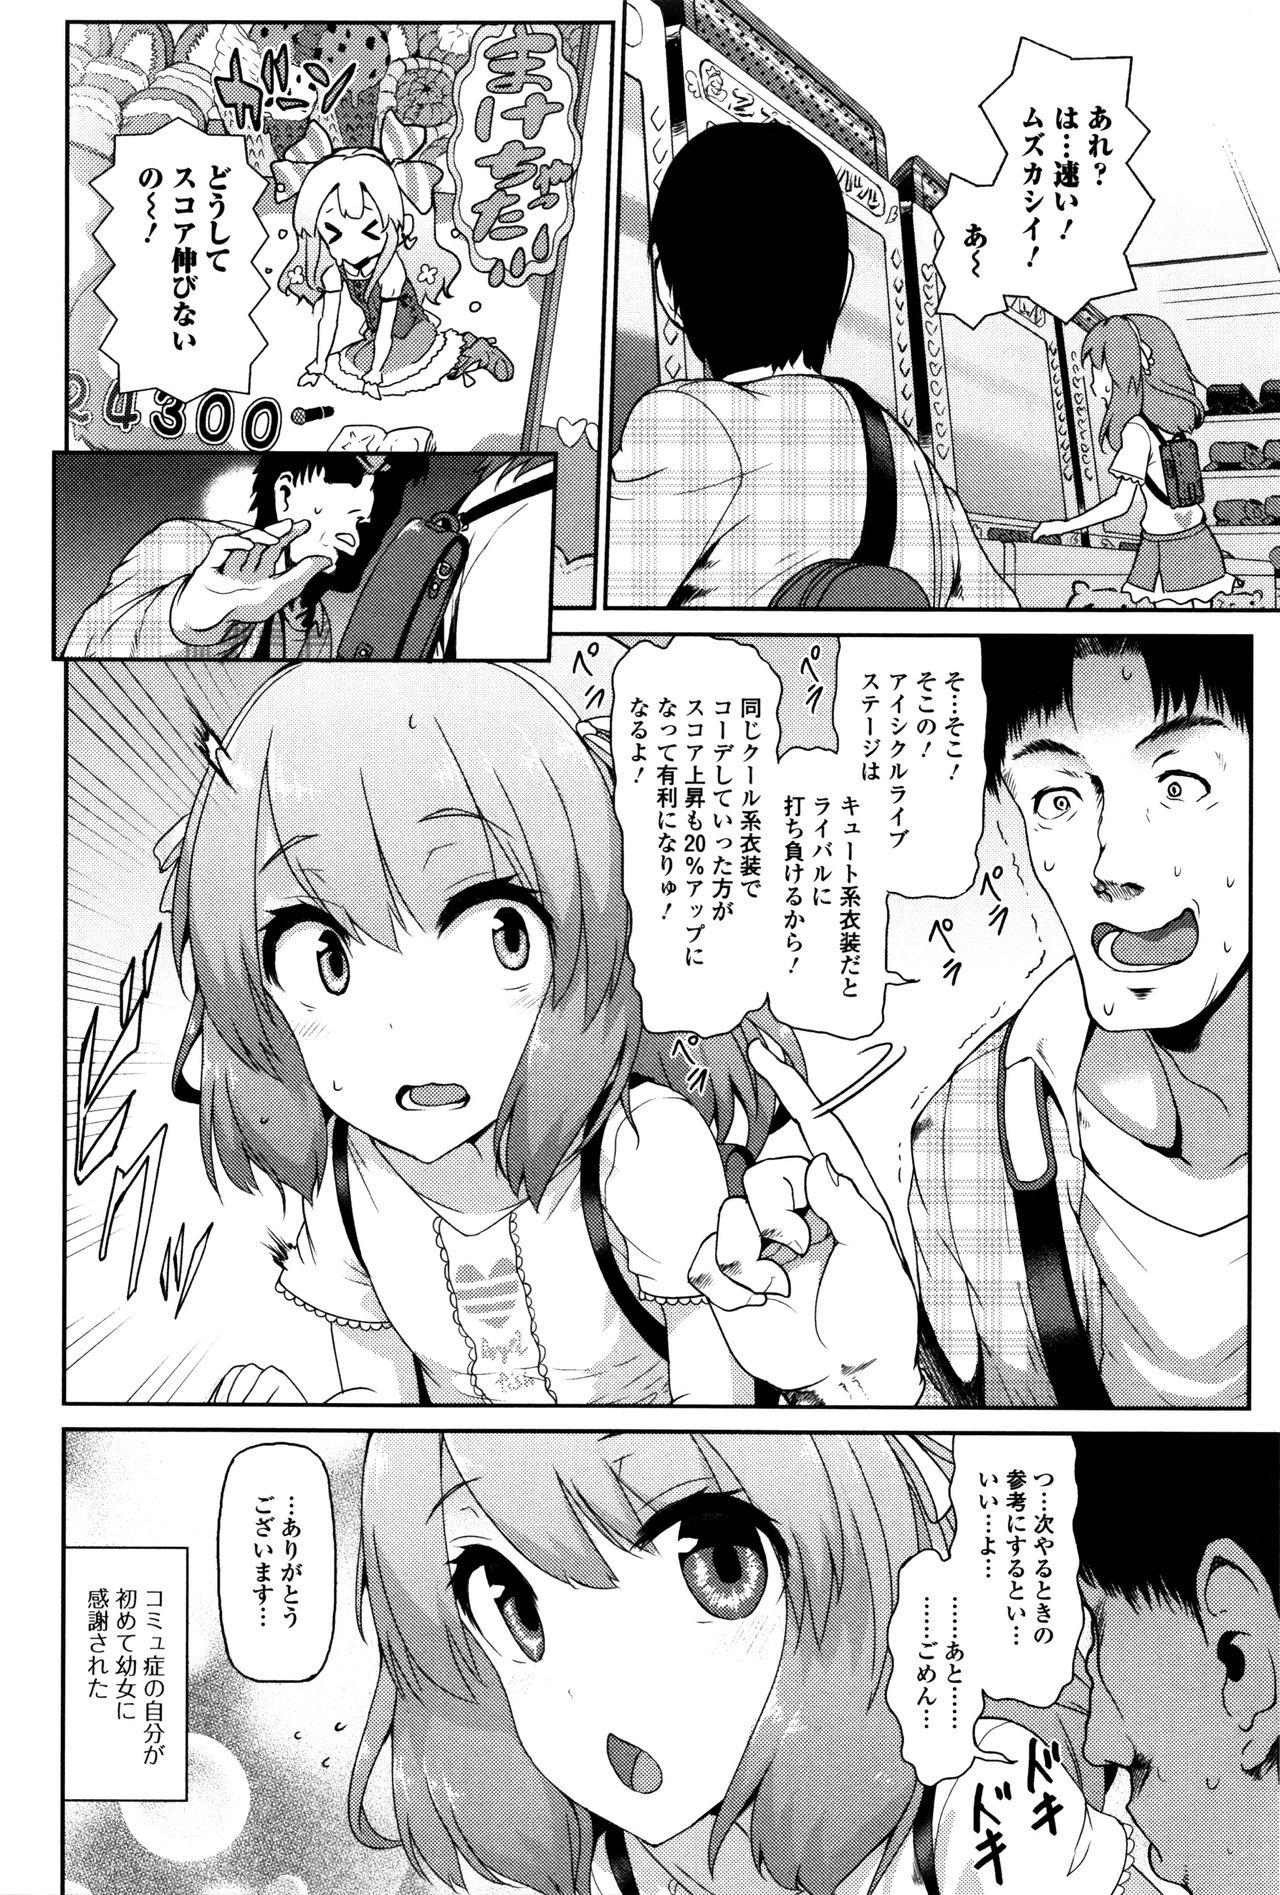 Rub Tadashii Koude no Tsukaikata Ano - Page 2